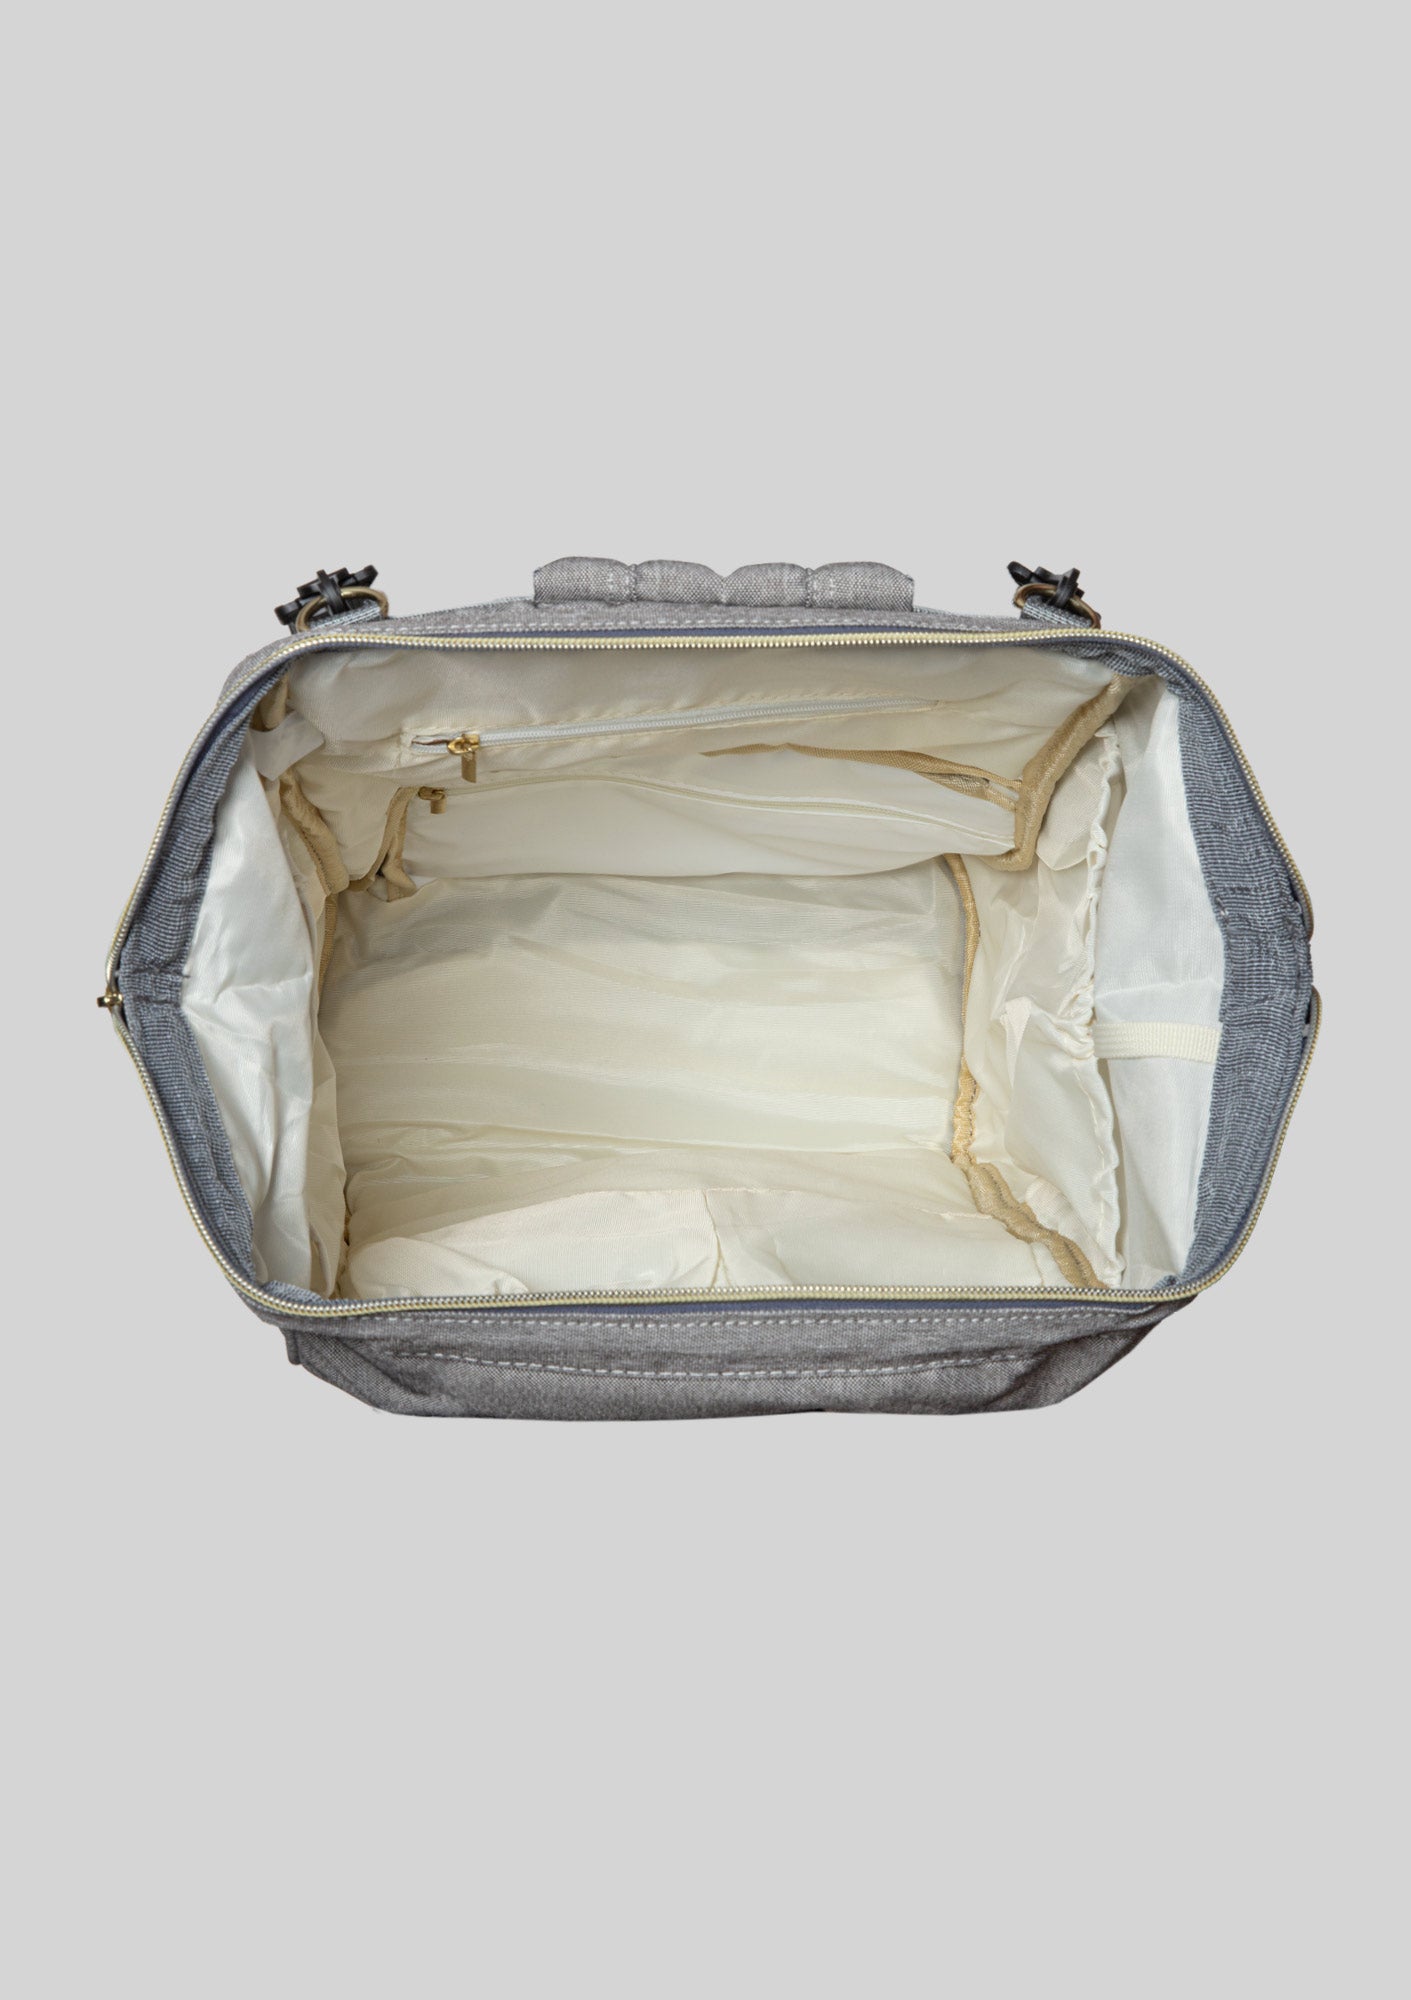 Gray Canvas Euro Diaper Bag